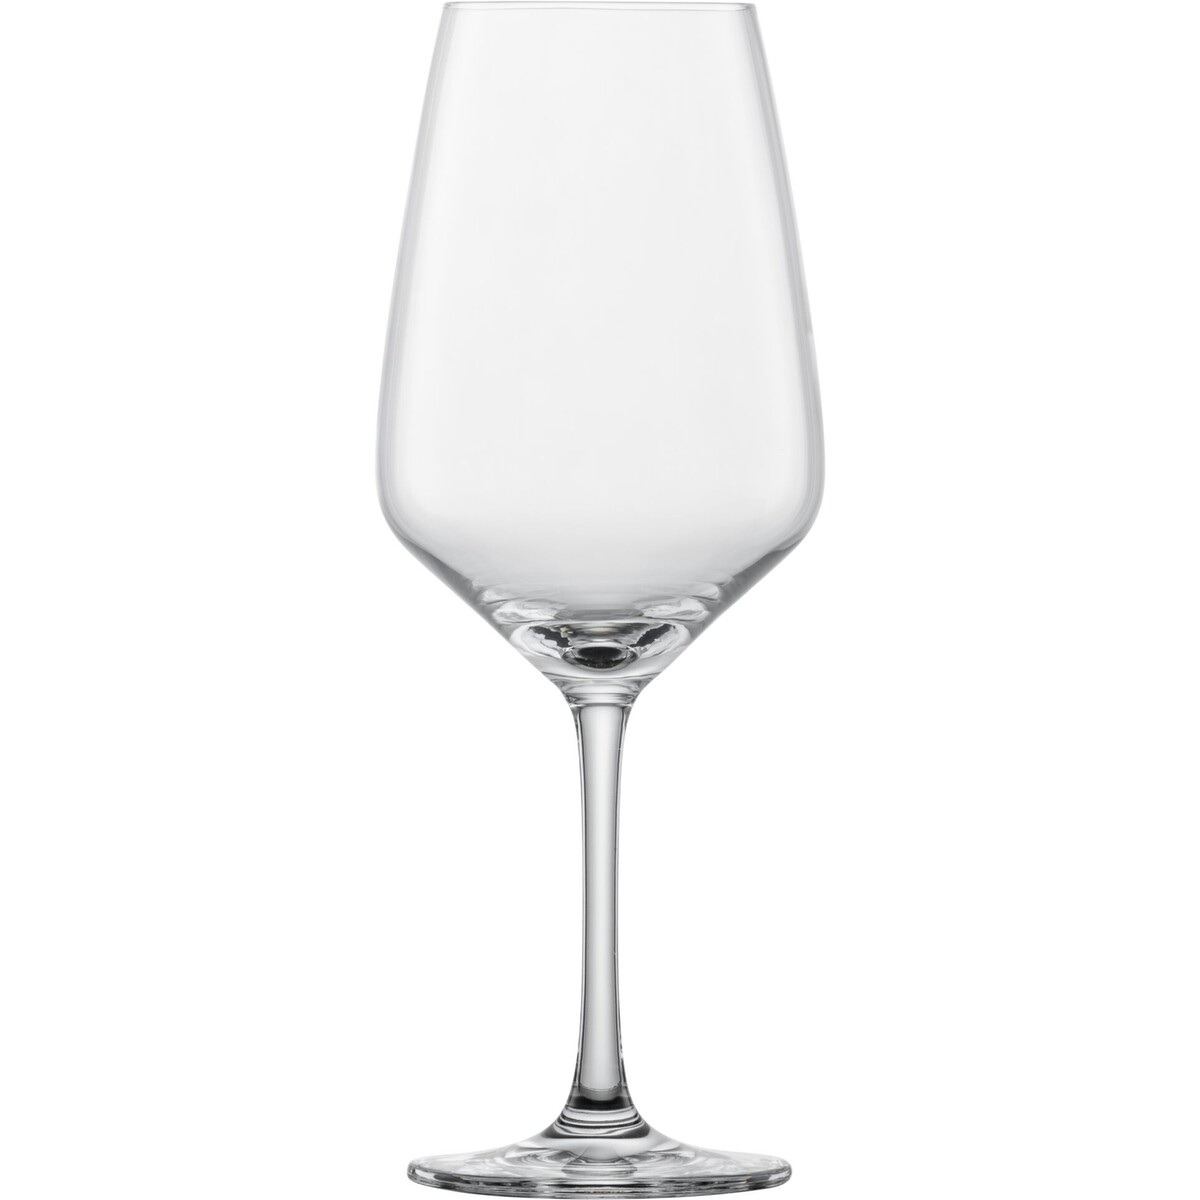 Glasserie "Taste" Rotweinglas 495ml mit Füllstrich